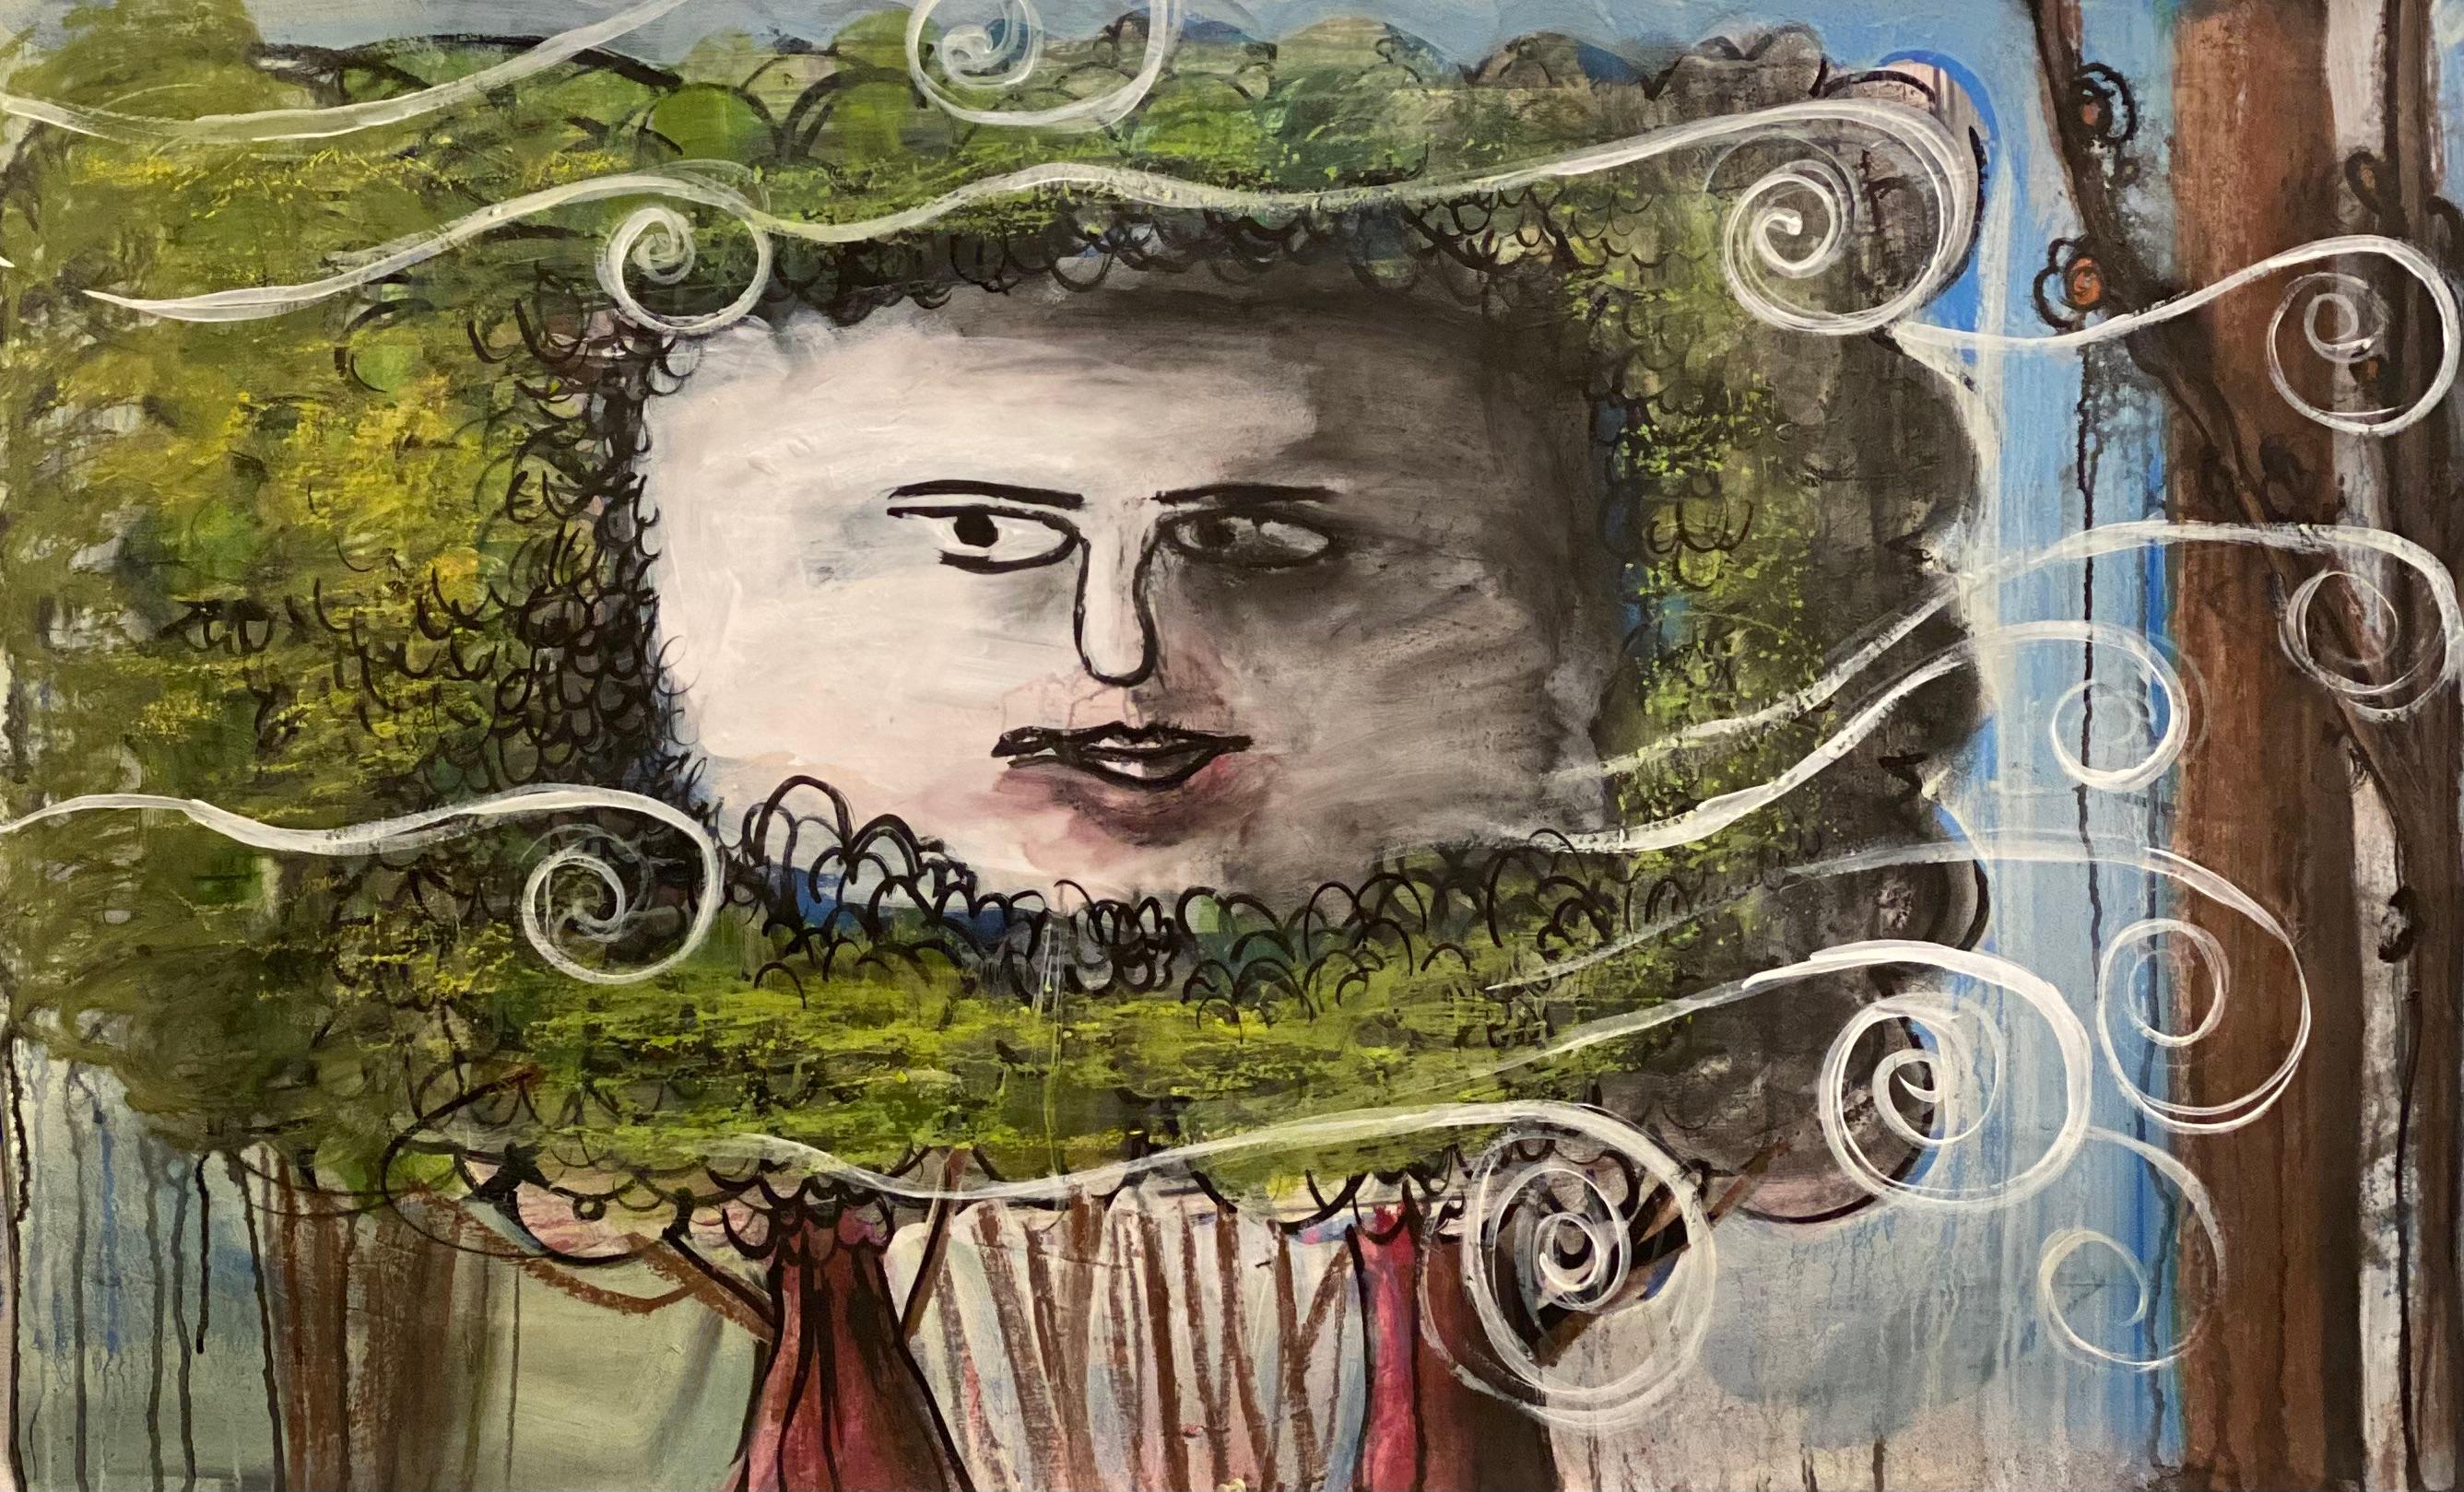 der Nordwind" 2021 von Deborah Buck. Acryl, Pastell und Tinte auf Papier. 29 x 46 Zoll. Dieses Werk zeigt eine surreale und doch vertraute Szene mit einem Humpty-Dumpty-ähnlichen Gesicht, das durch eine Komposition aus üppigen Bäumen weht. Das